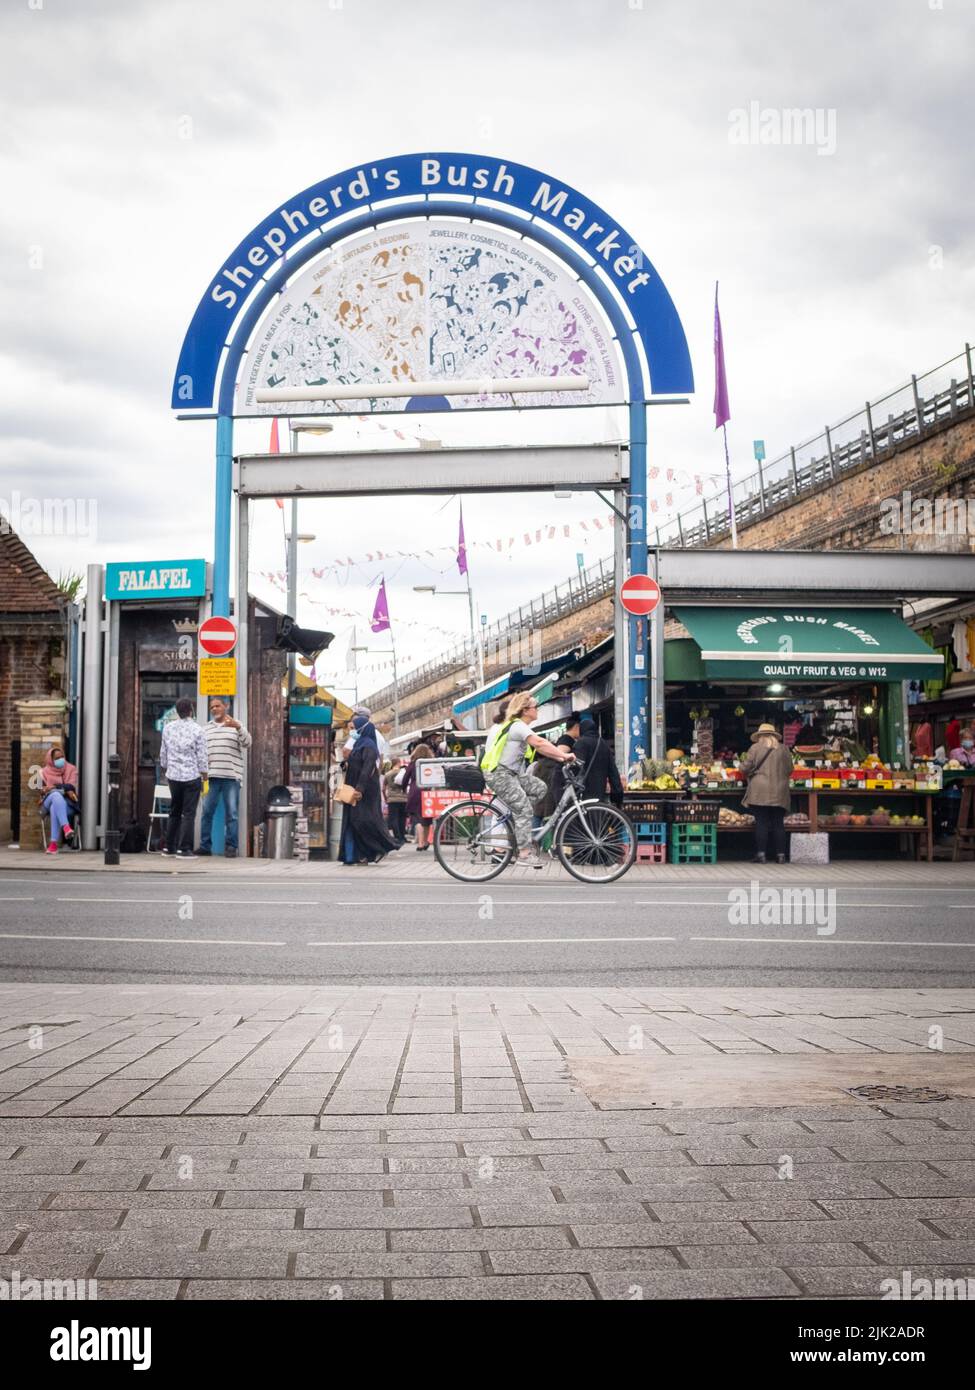 Londra, 2022 luglio: Shepherds Bush Market a West London. Un vecchio mercato vicino alla linea metropolitana Hammersmith & City. Foto Stock